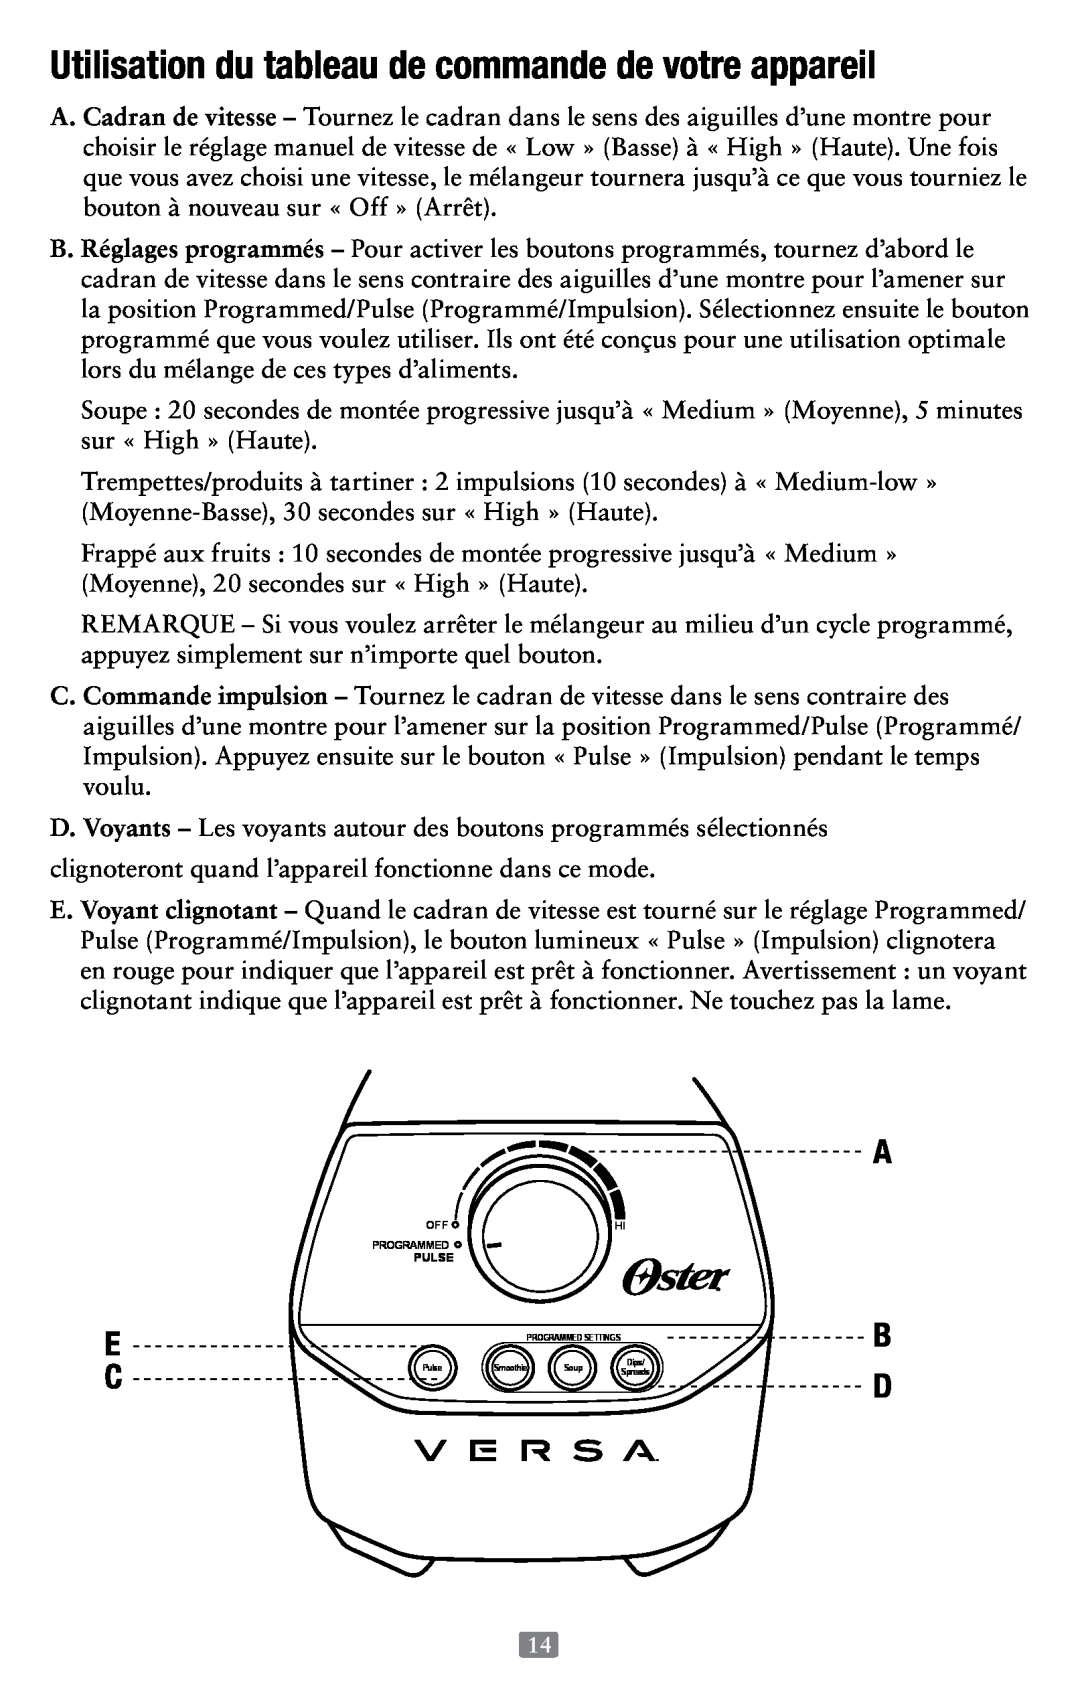 Oster 155876, Versa Performance Blender user manual A B D 